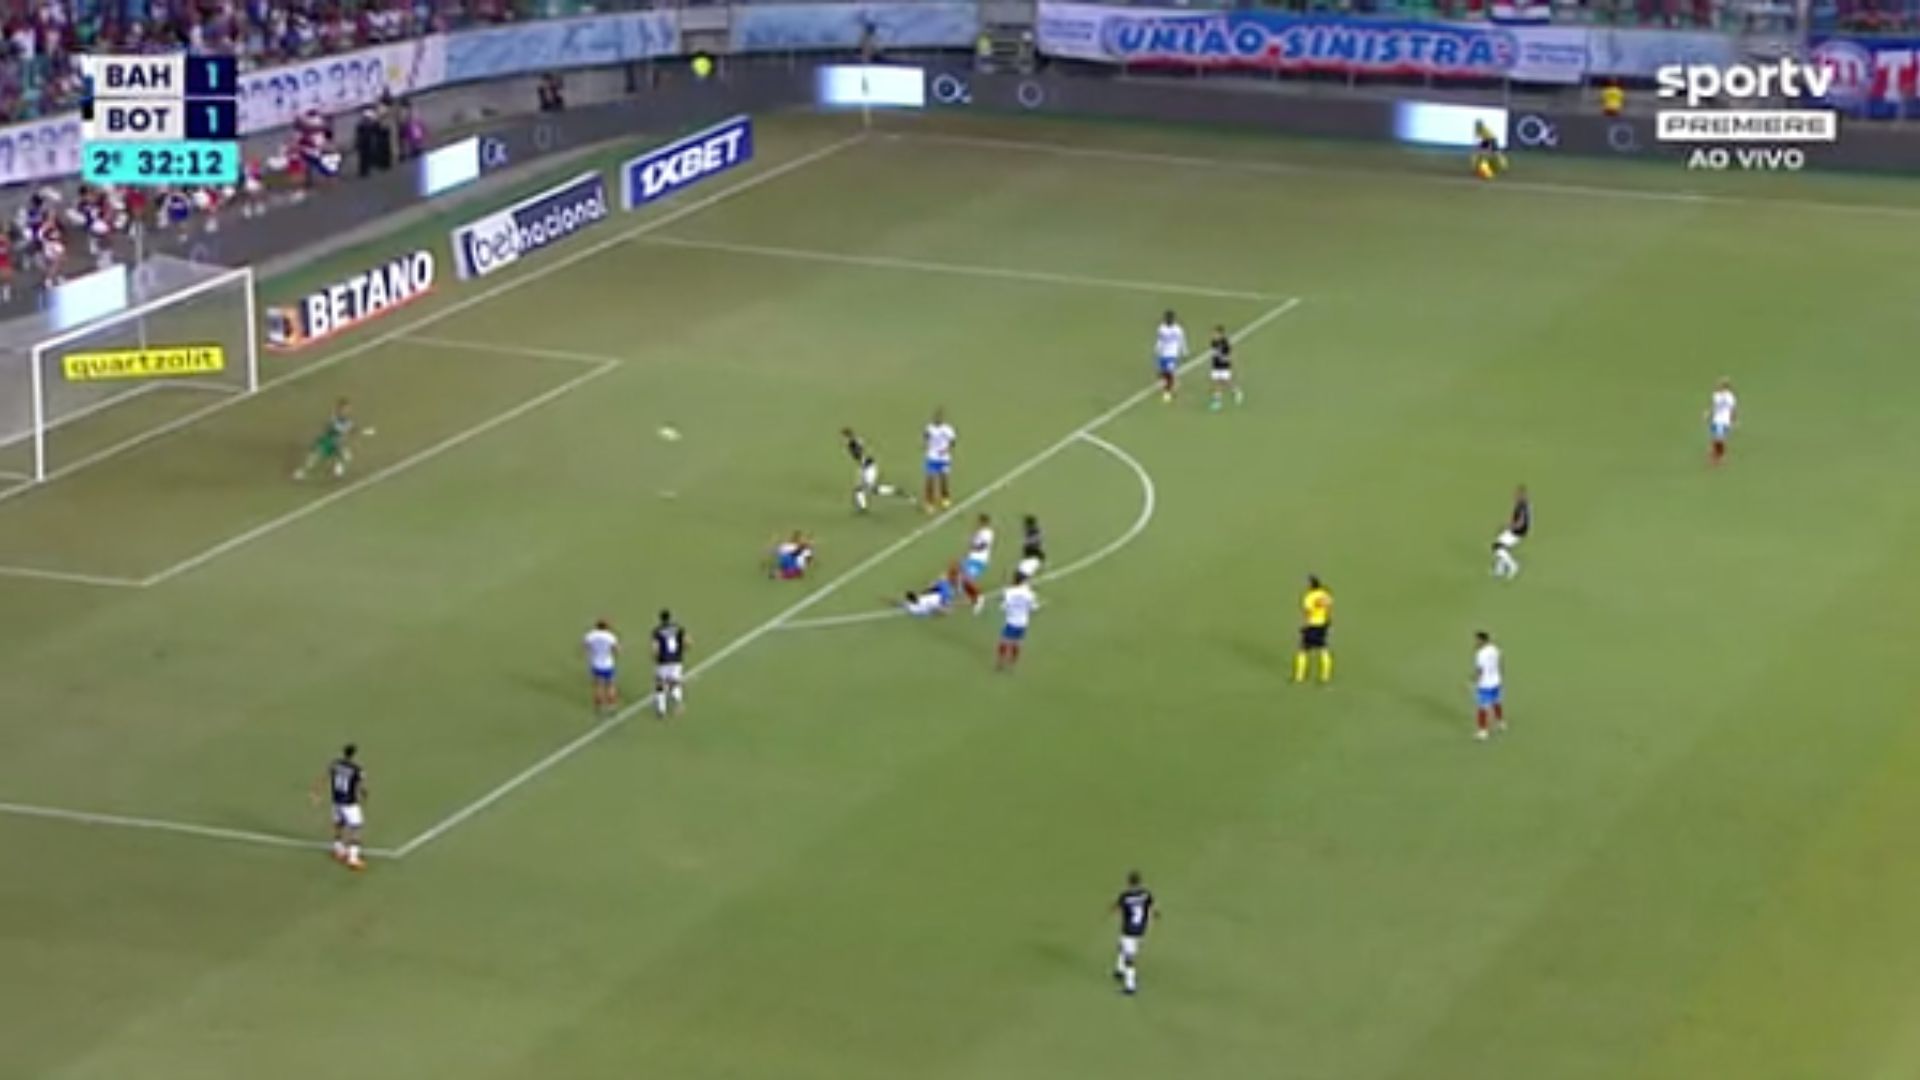 Momento do gol do Botafogo